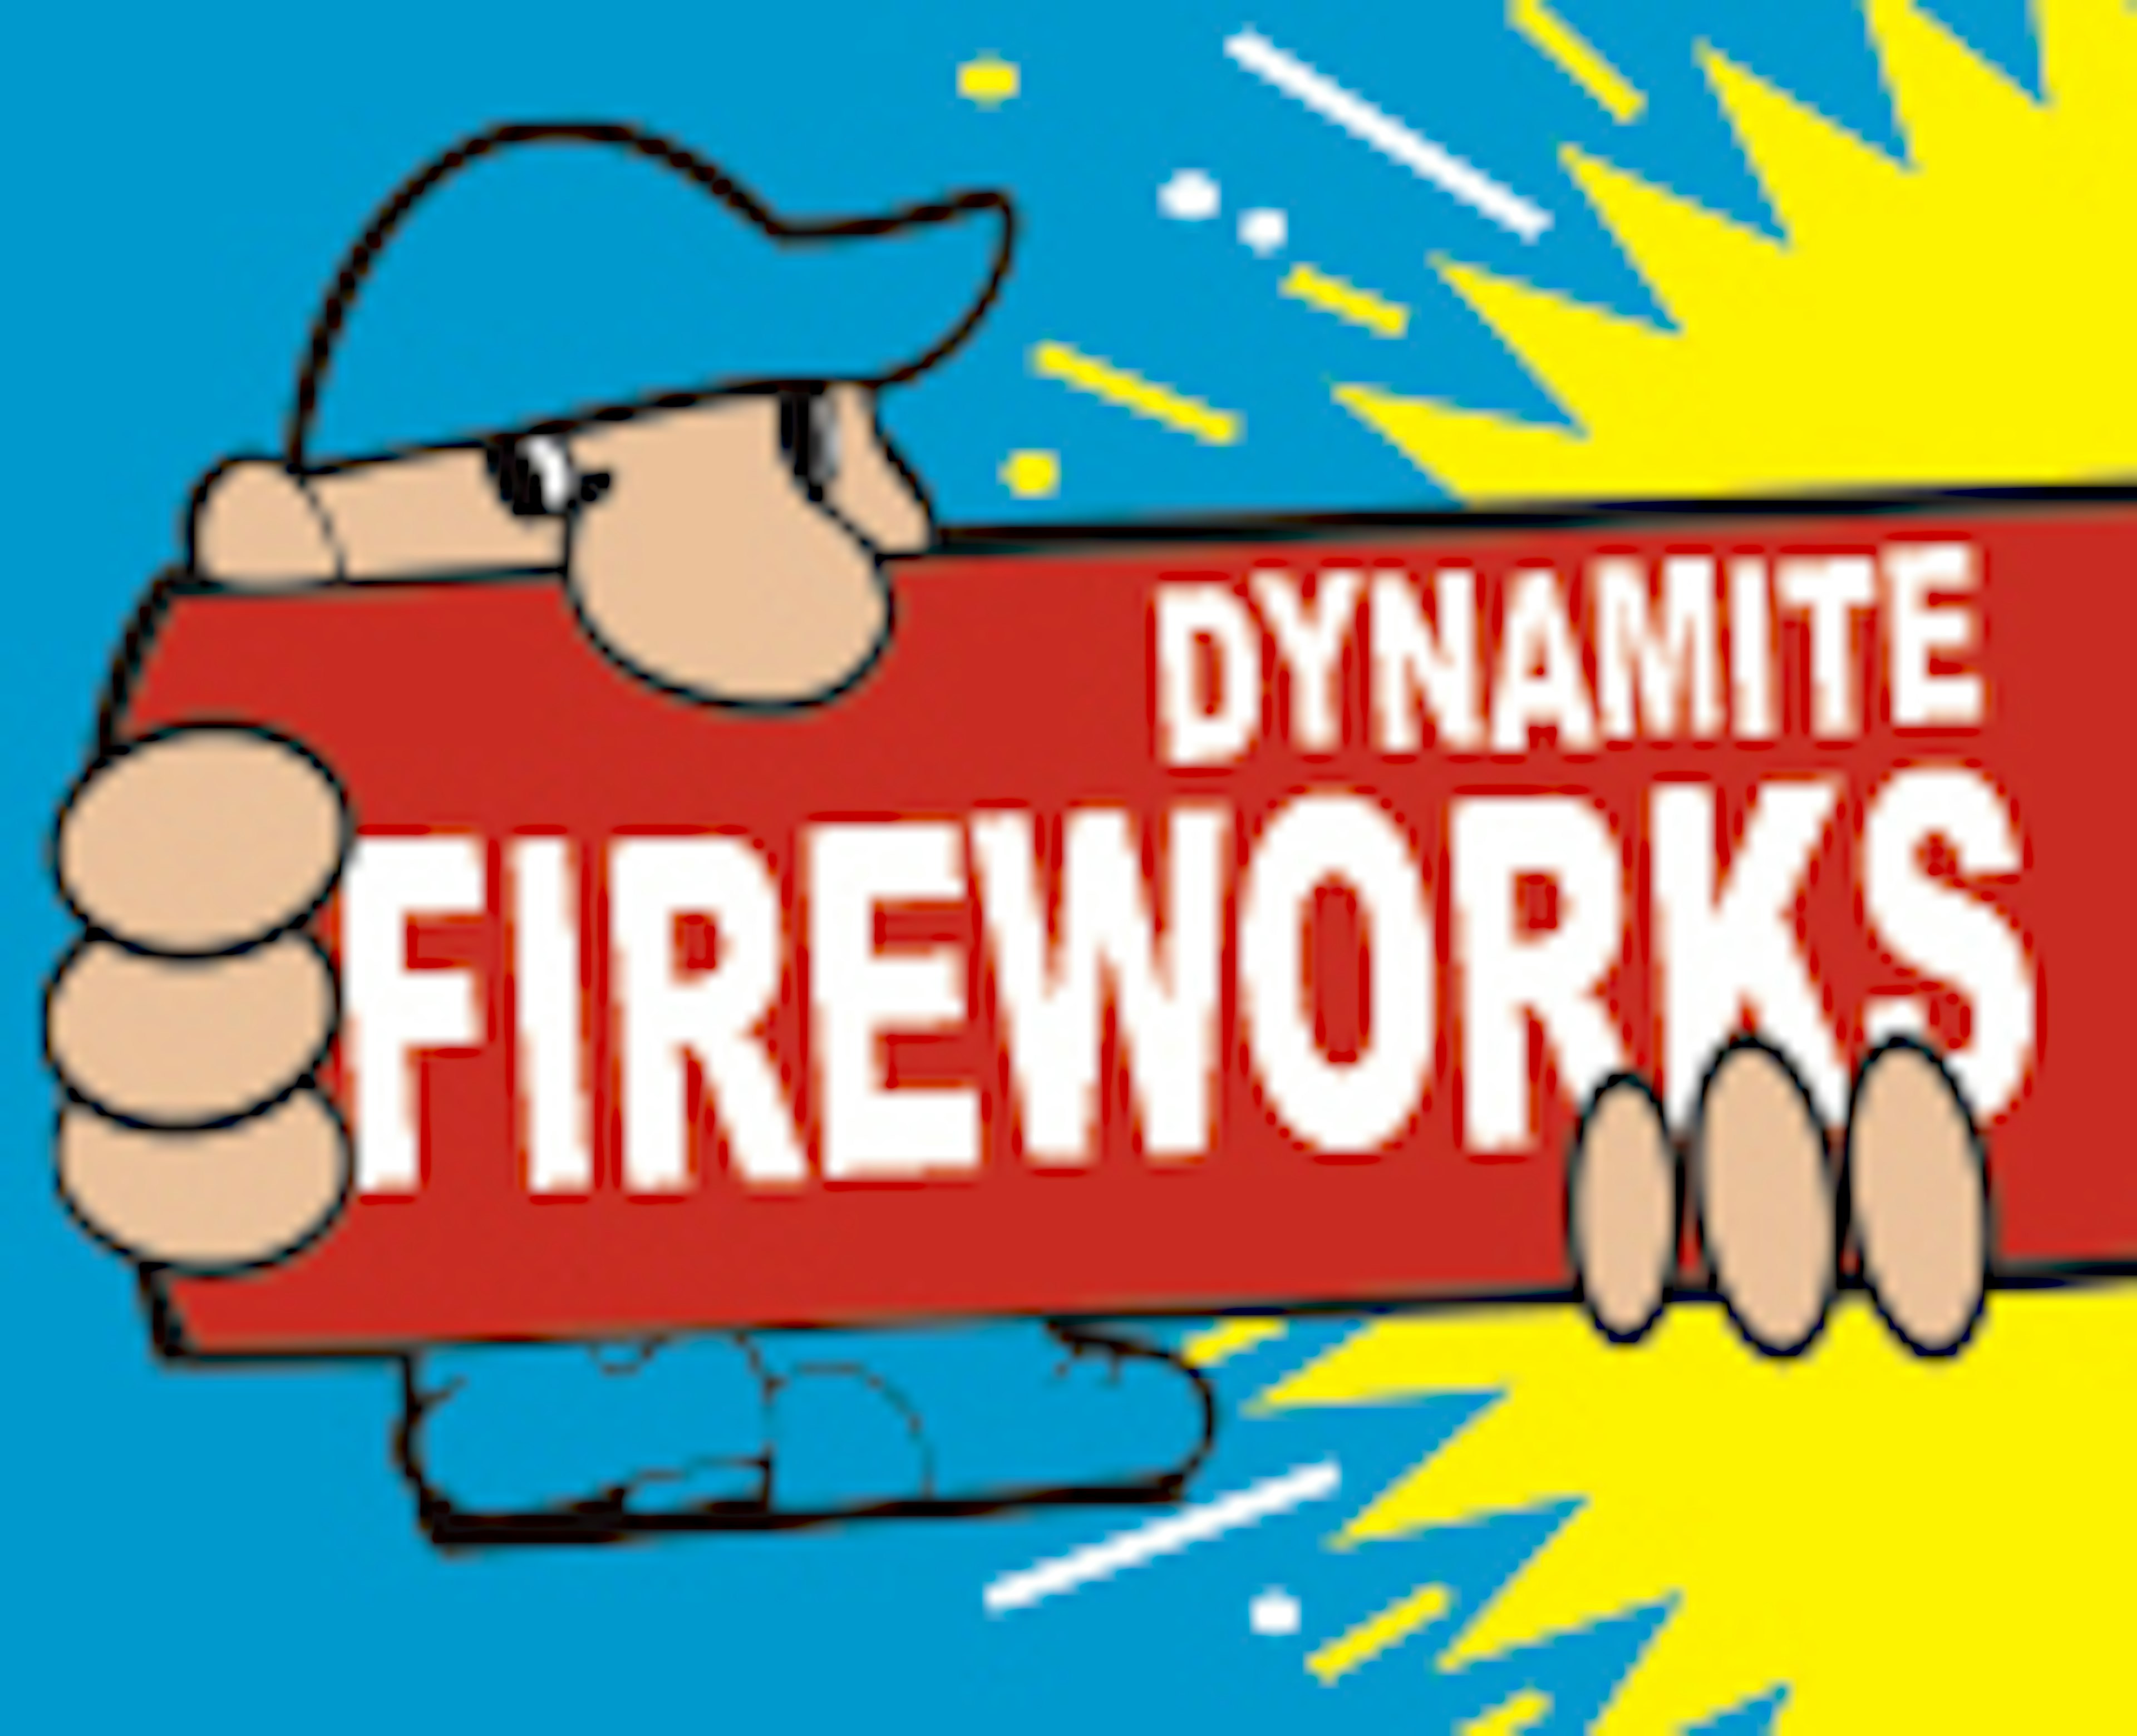 Dynamite Fireworks